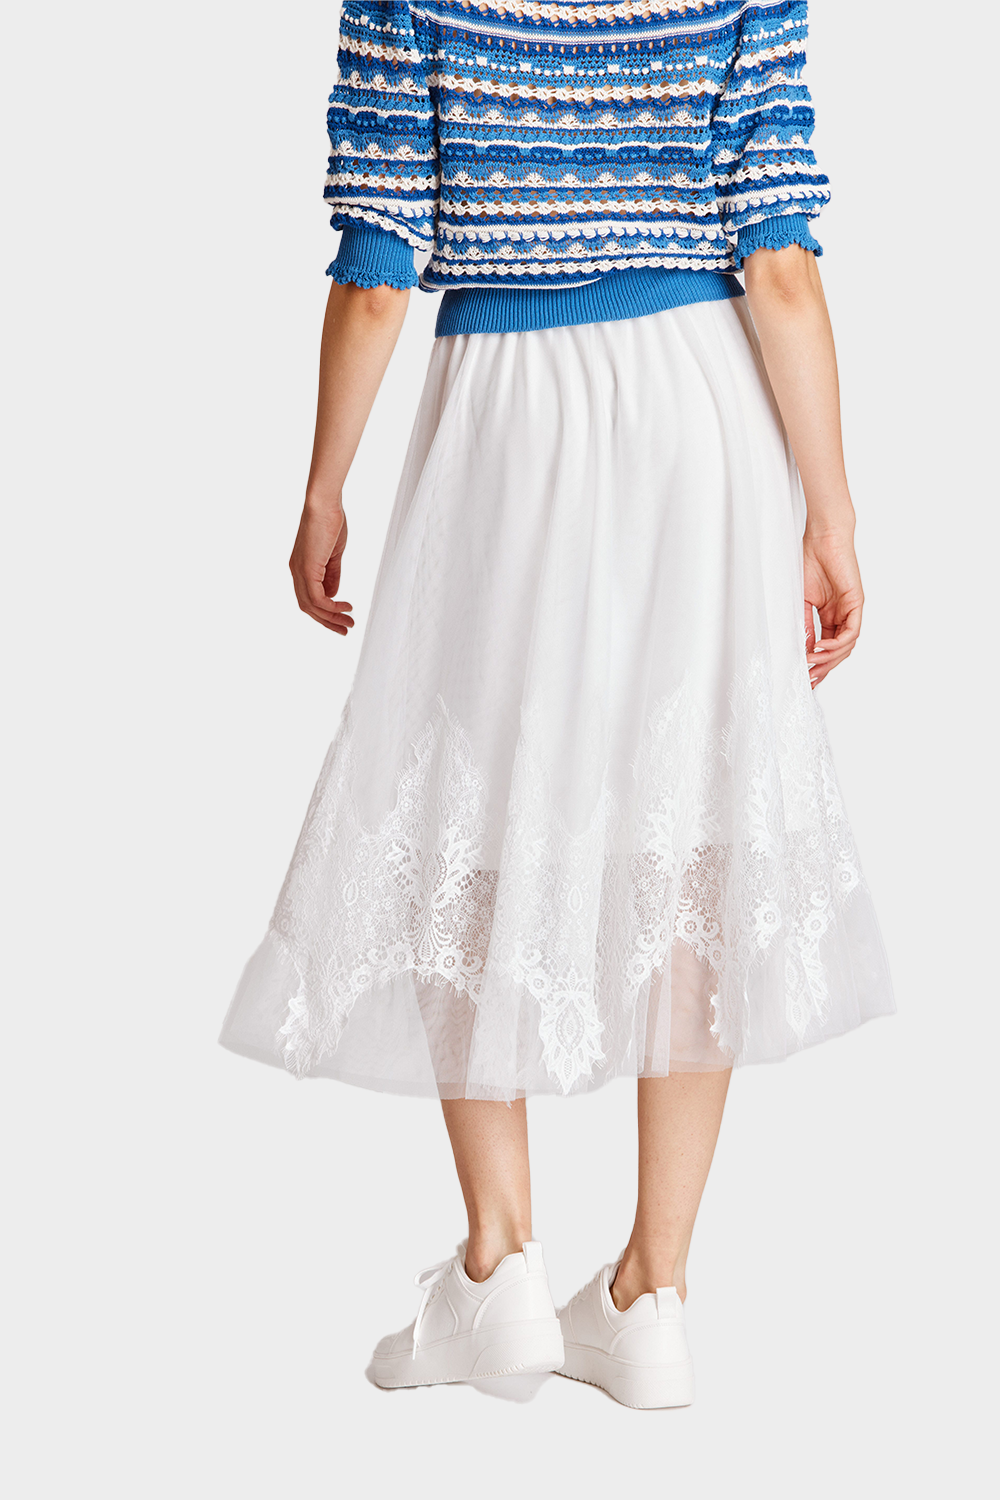 חצאית טול תחרה ארוכה לנשים RENE DERHY RENE DERHY Vendome online | ונדום .